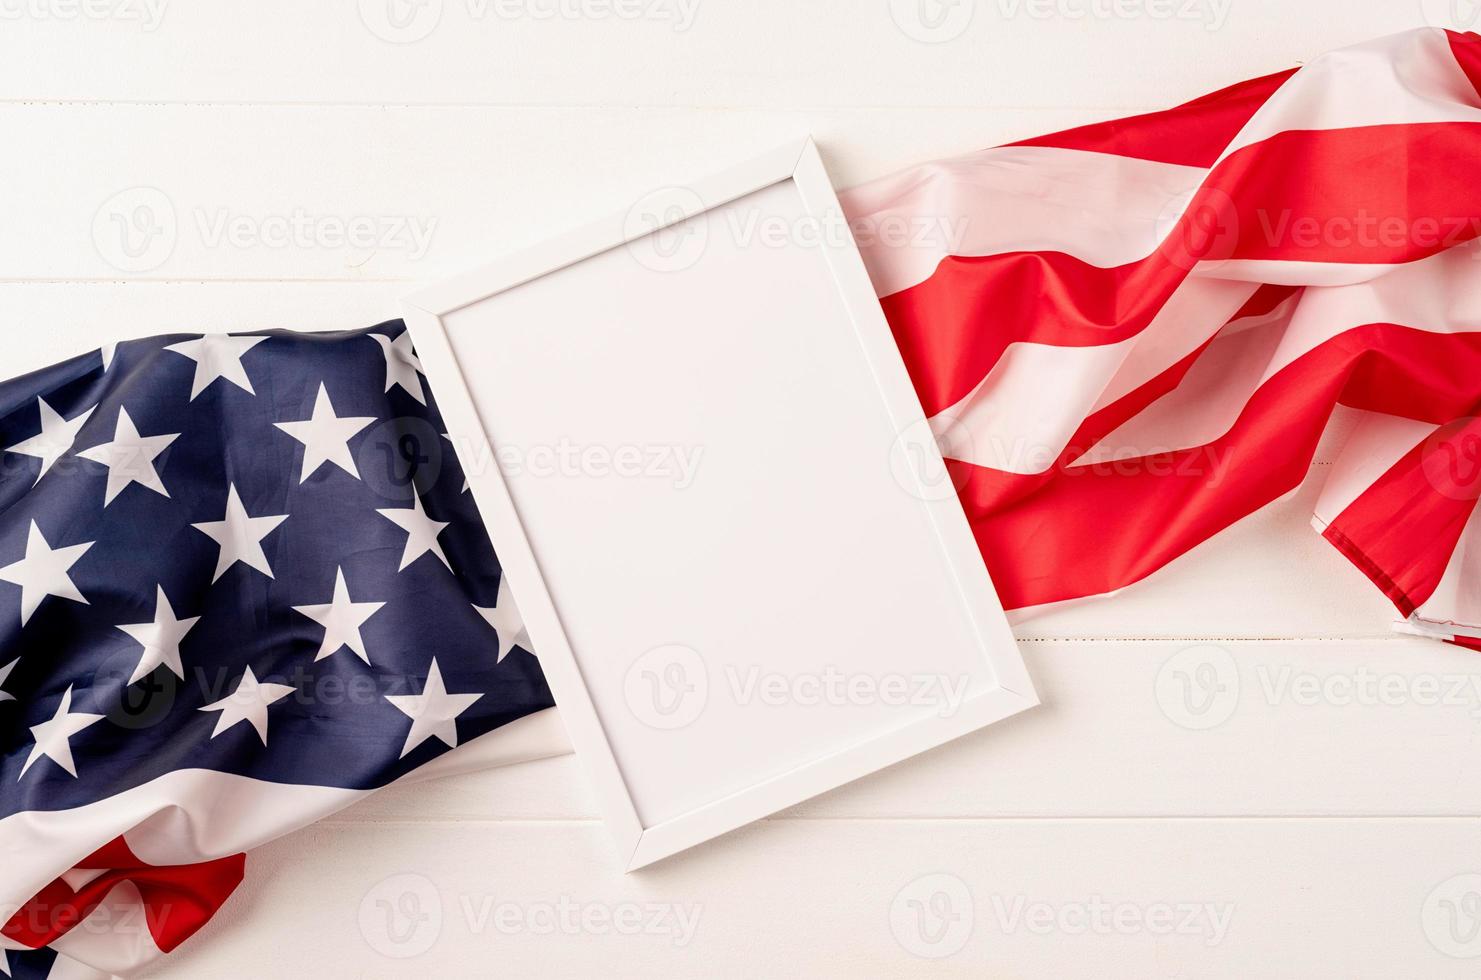 cornice bianca vuota per la progettazione di mockup su sfondo di legno bandiera nazionale americana foto